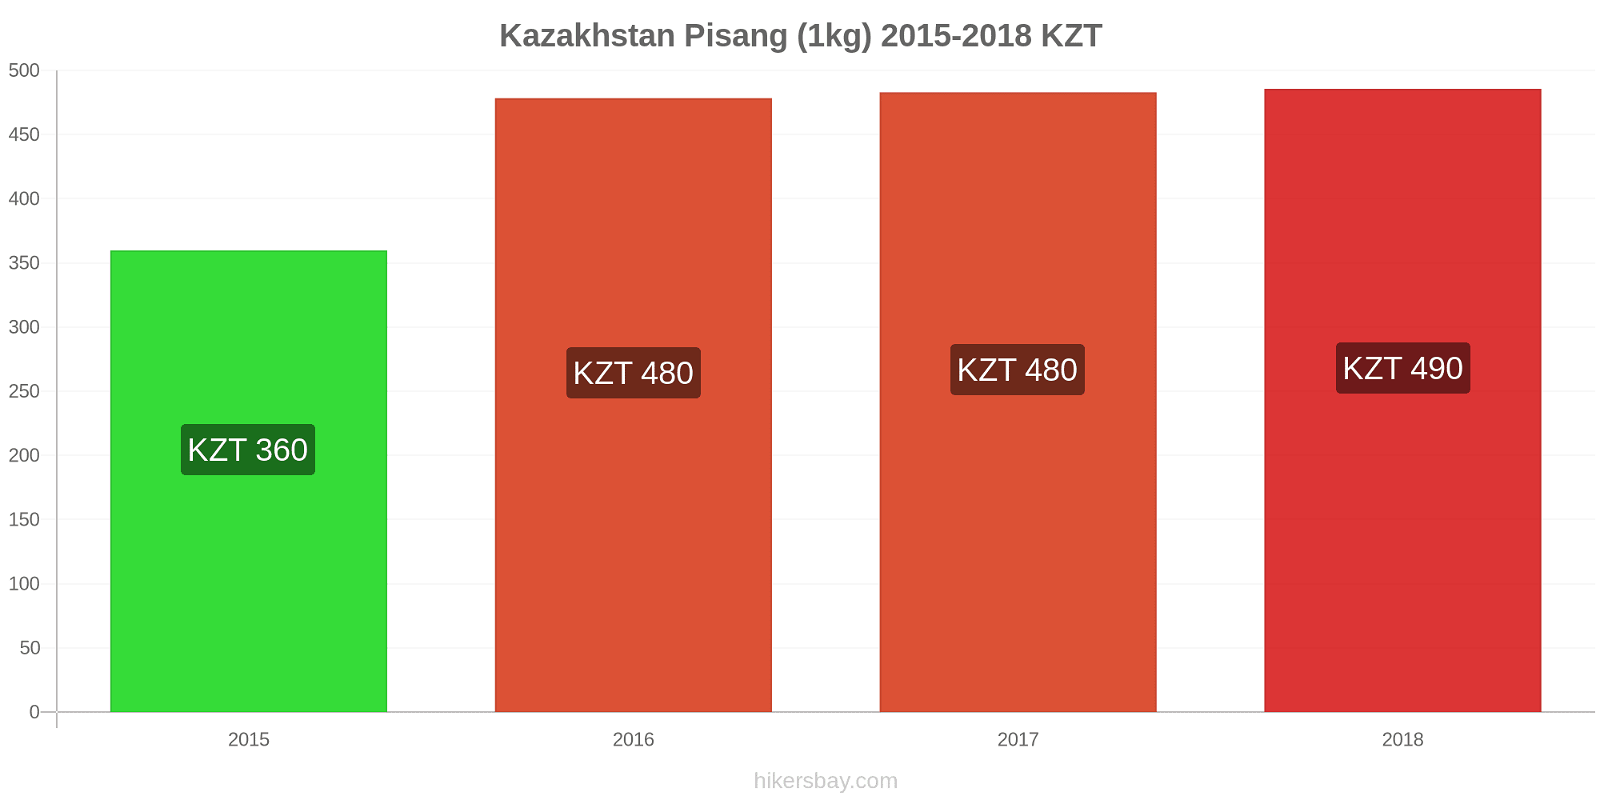 Kazakhstan perubahan harga Pisang (1kg) hikersbay.com